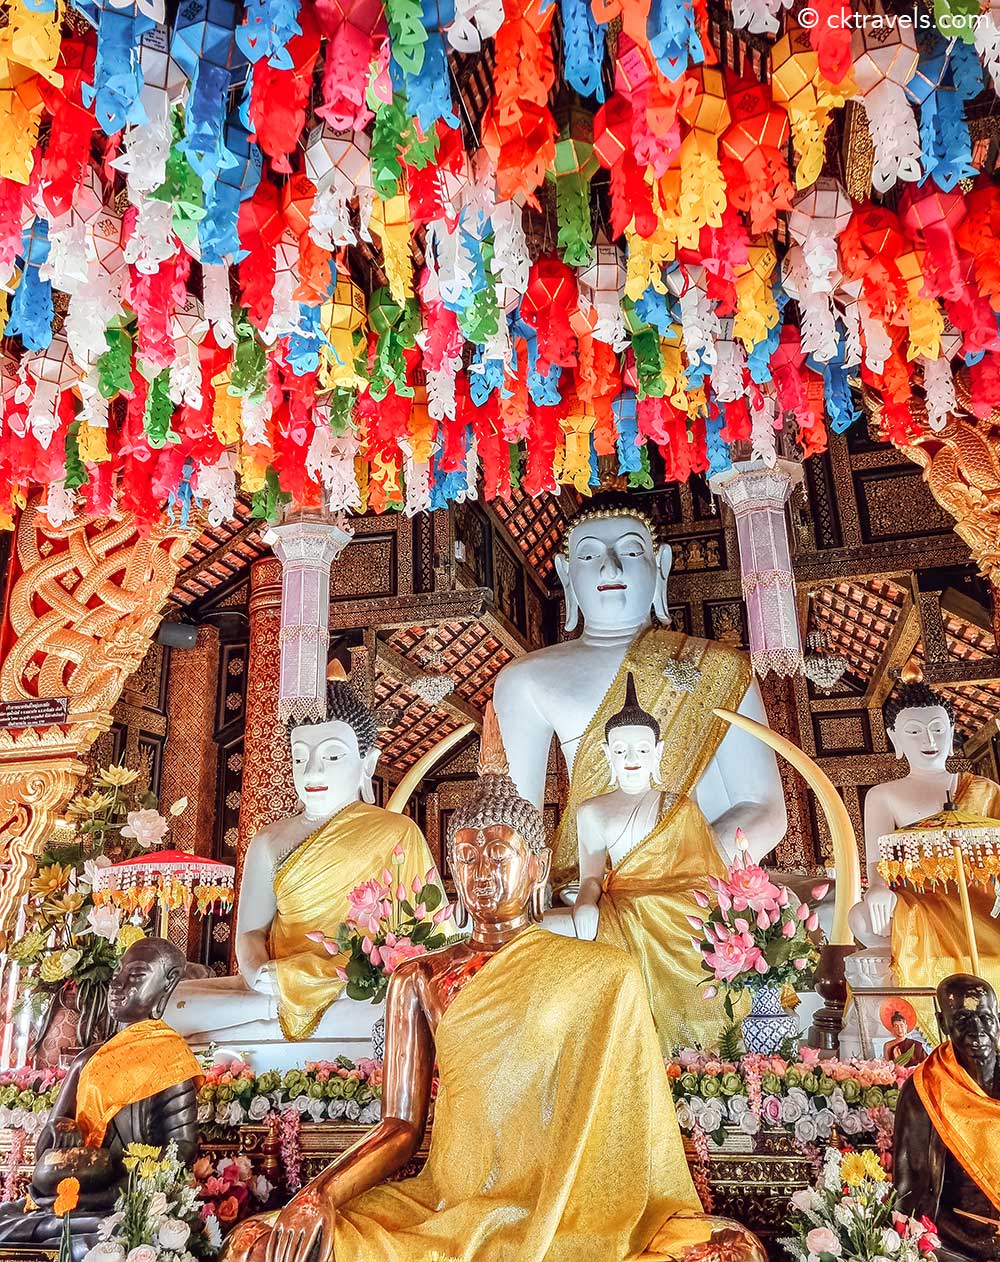 Lanterns at Wat Inthakhin Sadue Muang temple